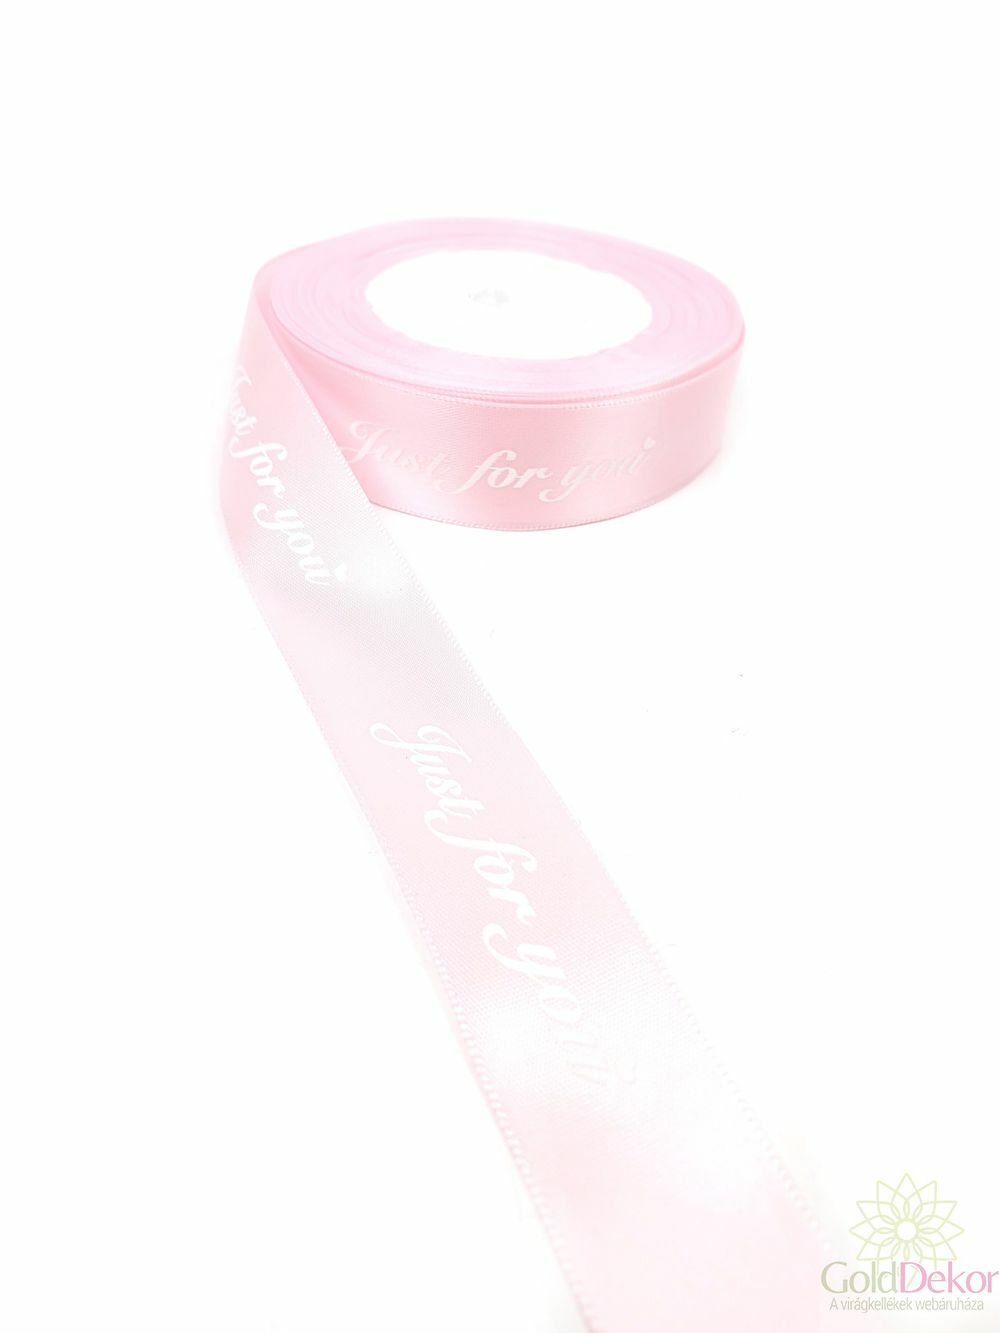 Feliratos szatén szalag JUST FOR YOU 2,5 cm - Rózsaszín